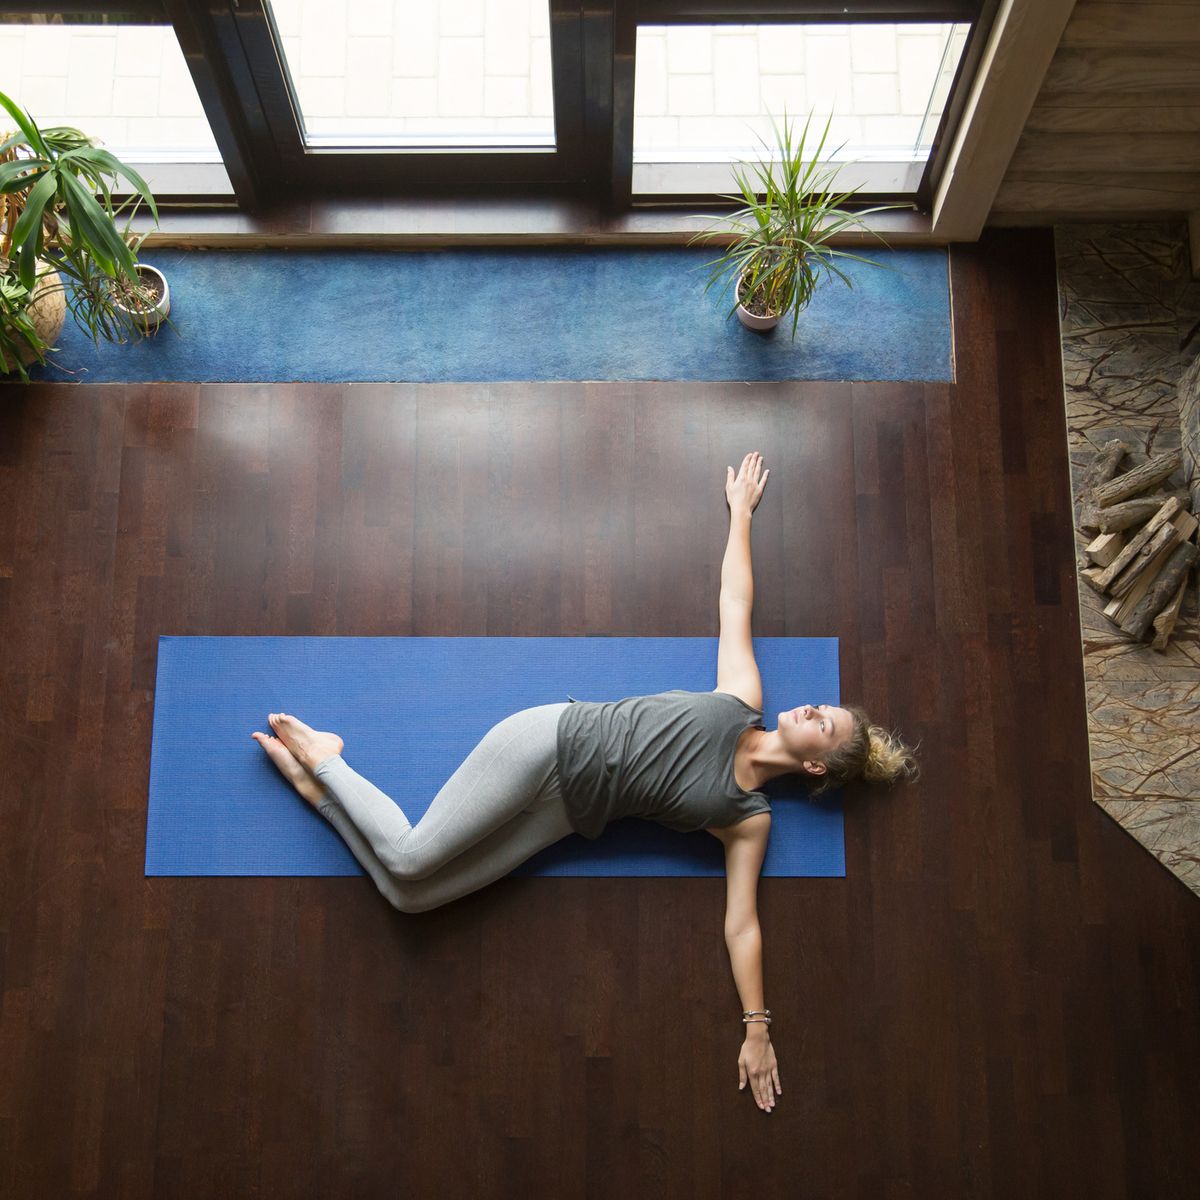 Estas son las mejores alfombrillas para yoga, según los expertos